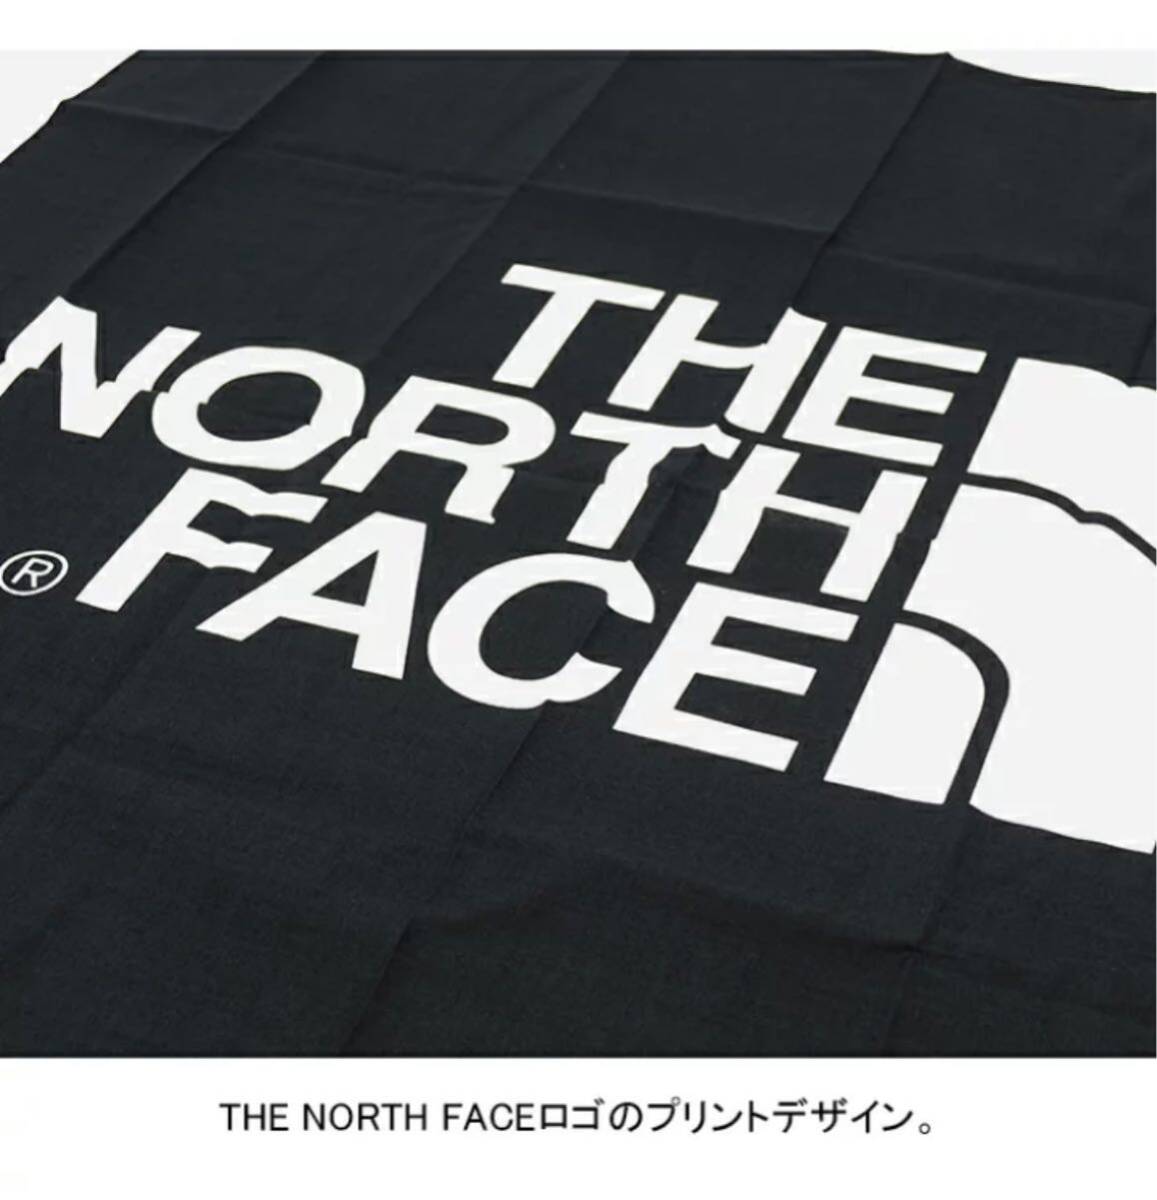 【新品未使用】THE NORTH FACE ザノースフェイス TNF ロゴバンダナ キャンプ スポーツ ユニセックス ブラック 黒_画像4